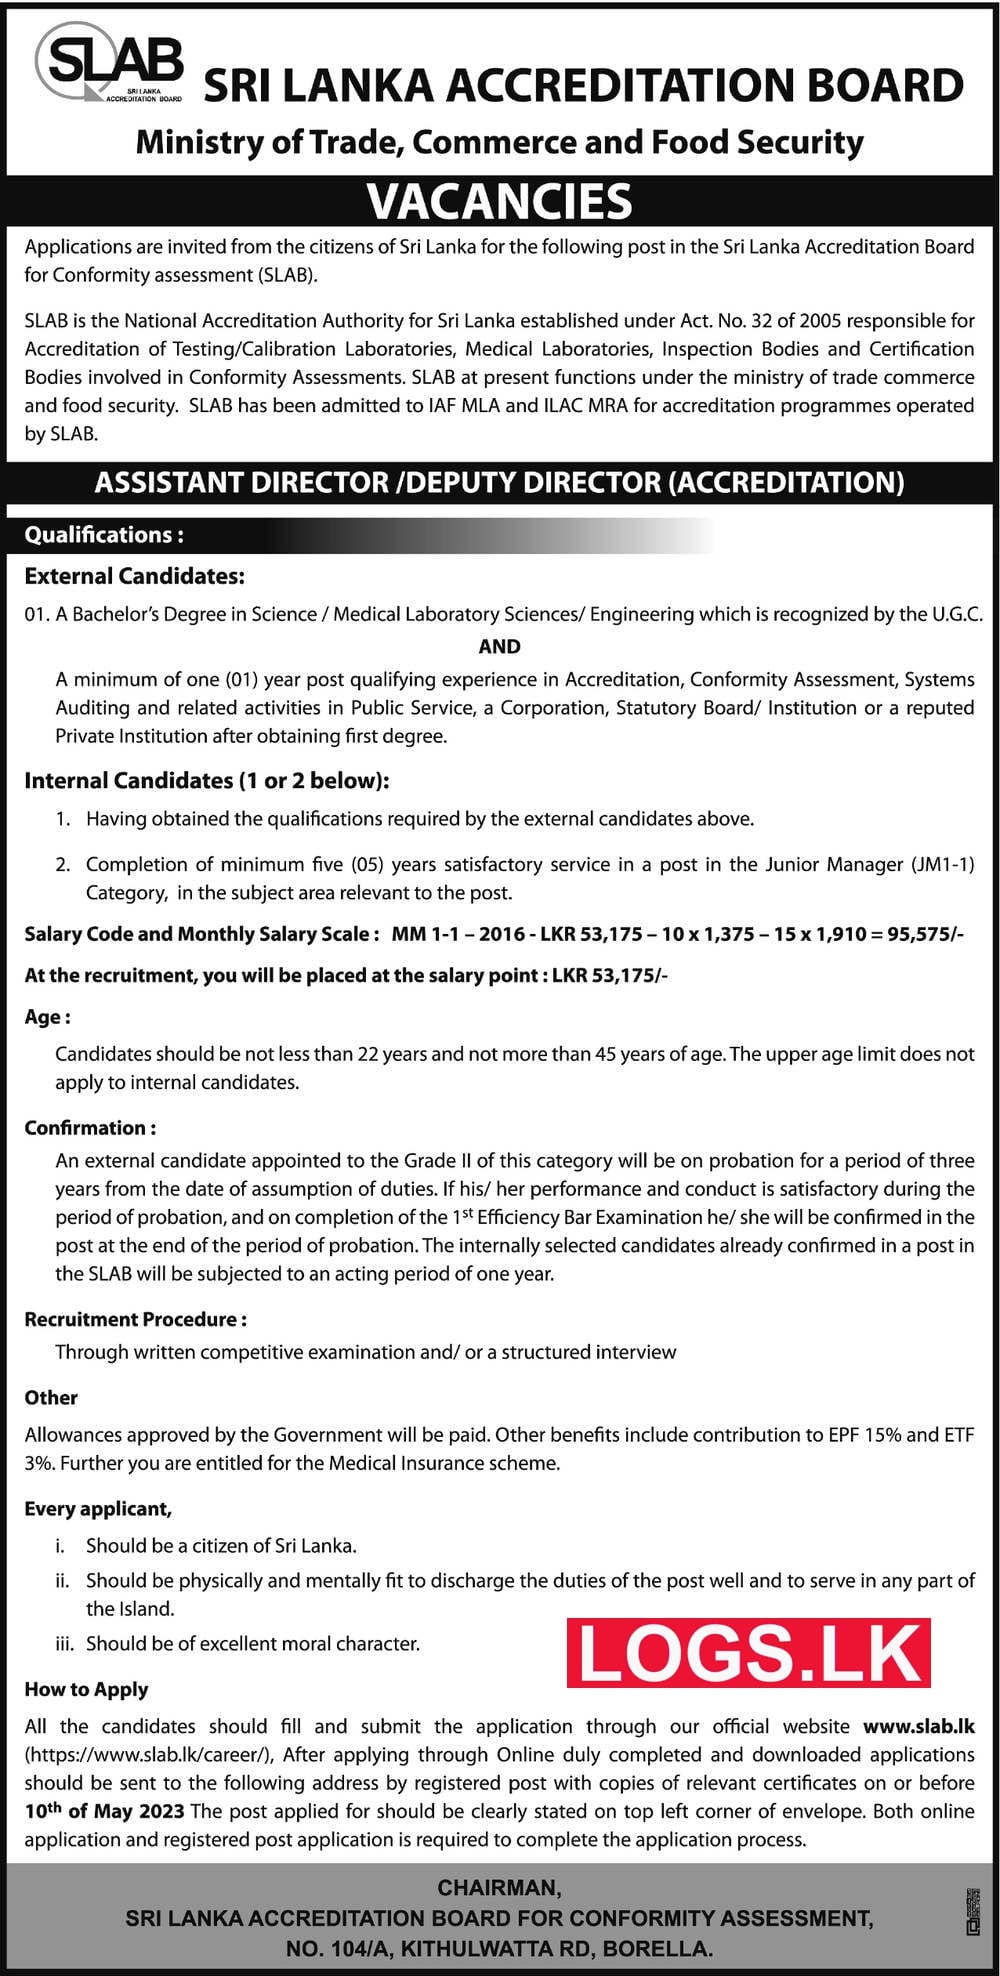 Directors - Sri Lanka Accreditation Board Vacancies 2023 Application Form, Details Download